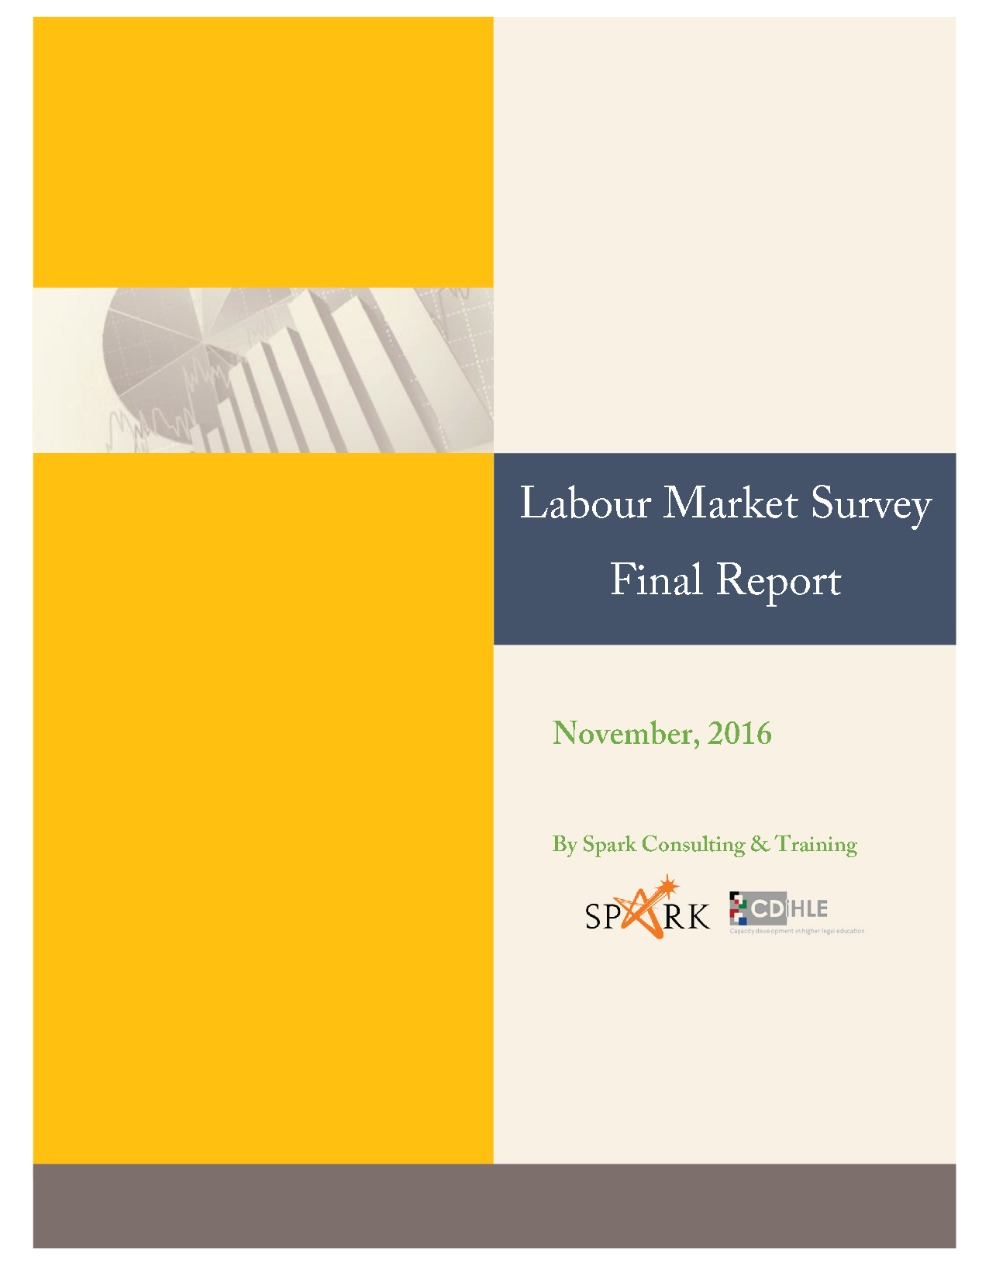 التقرير النهائي الخاص بمسح سوق العمل - تشرين ثاني / نوفمبر 2016